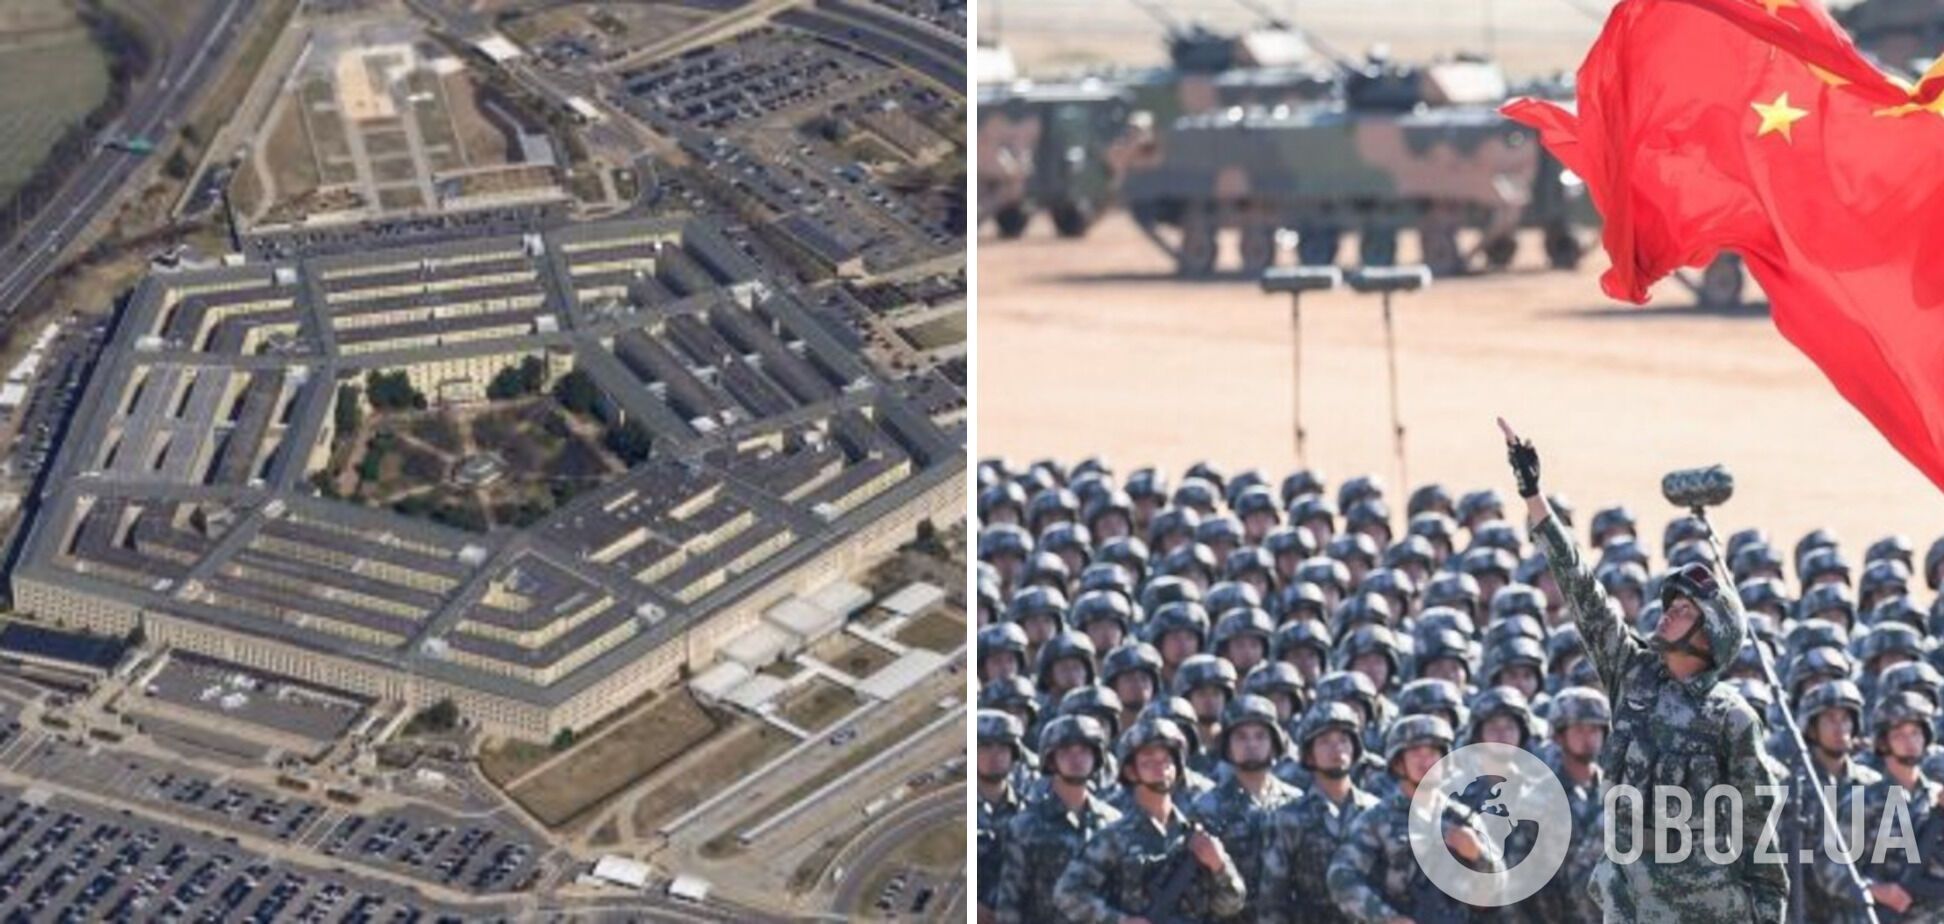 Пентагон планує нарощування військового потенціалу для протидії Китаю